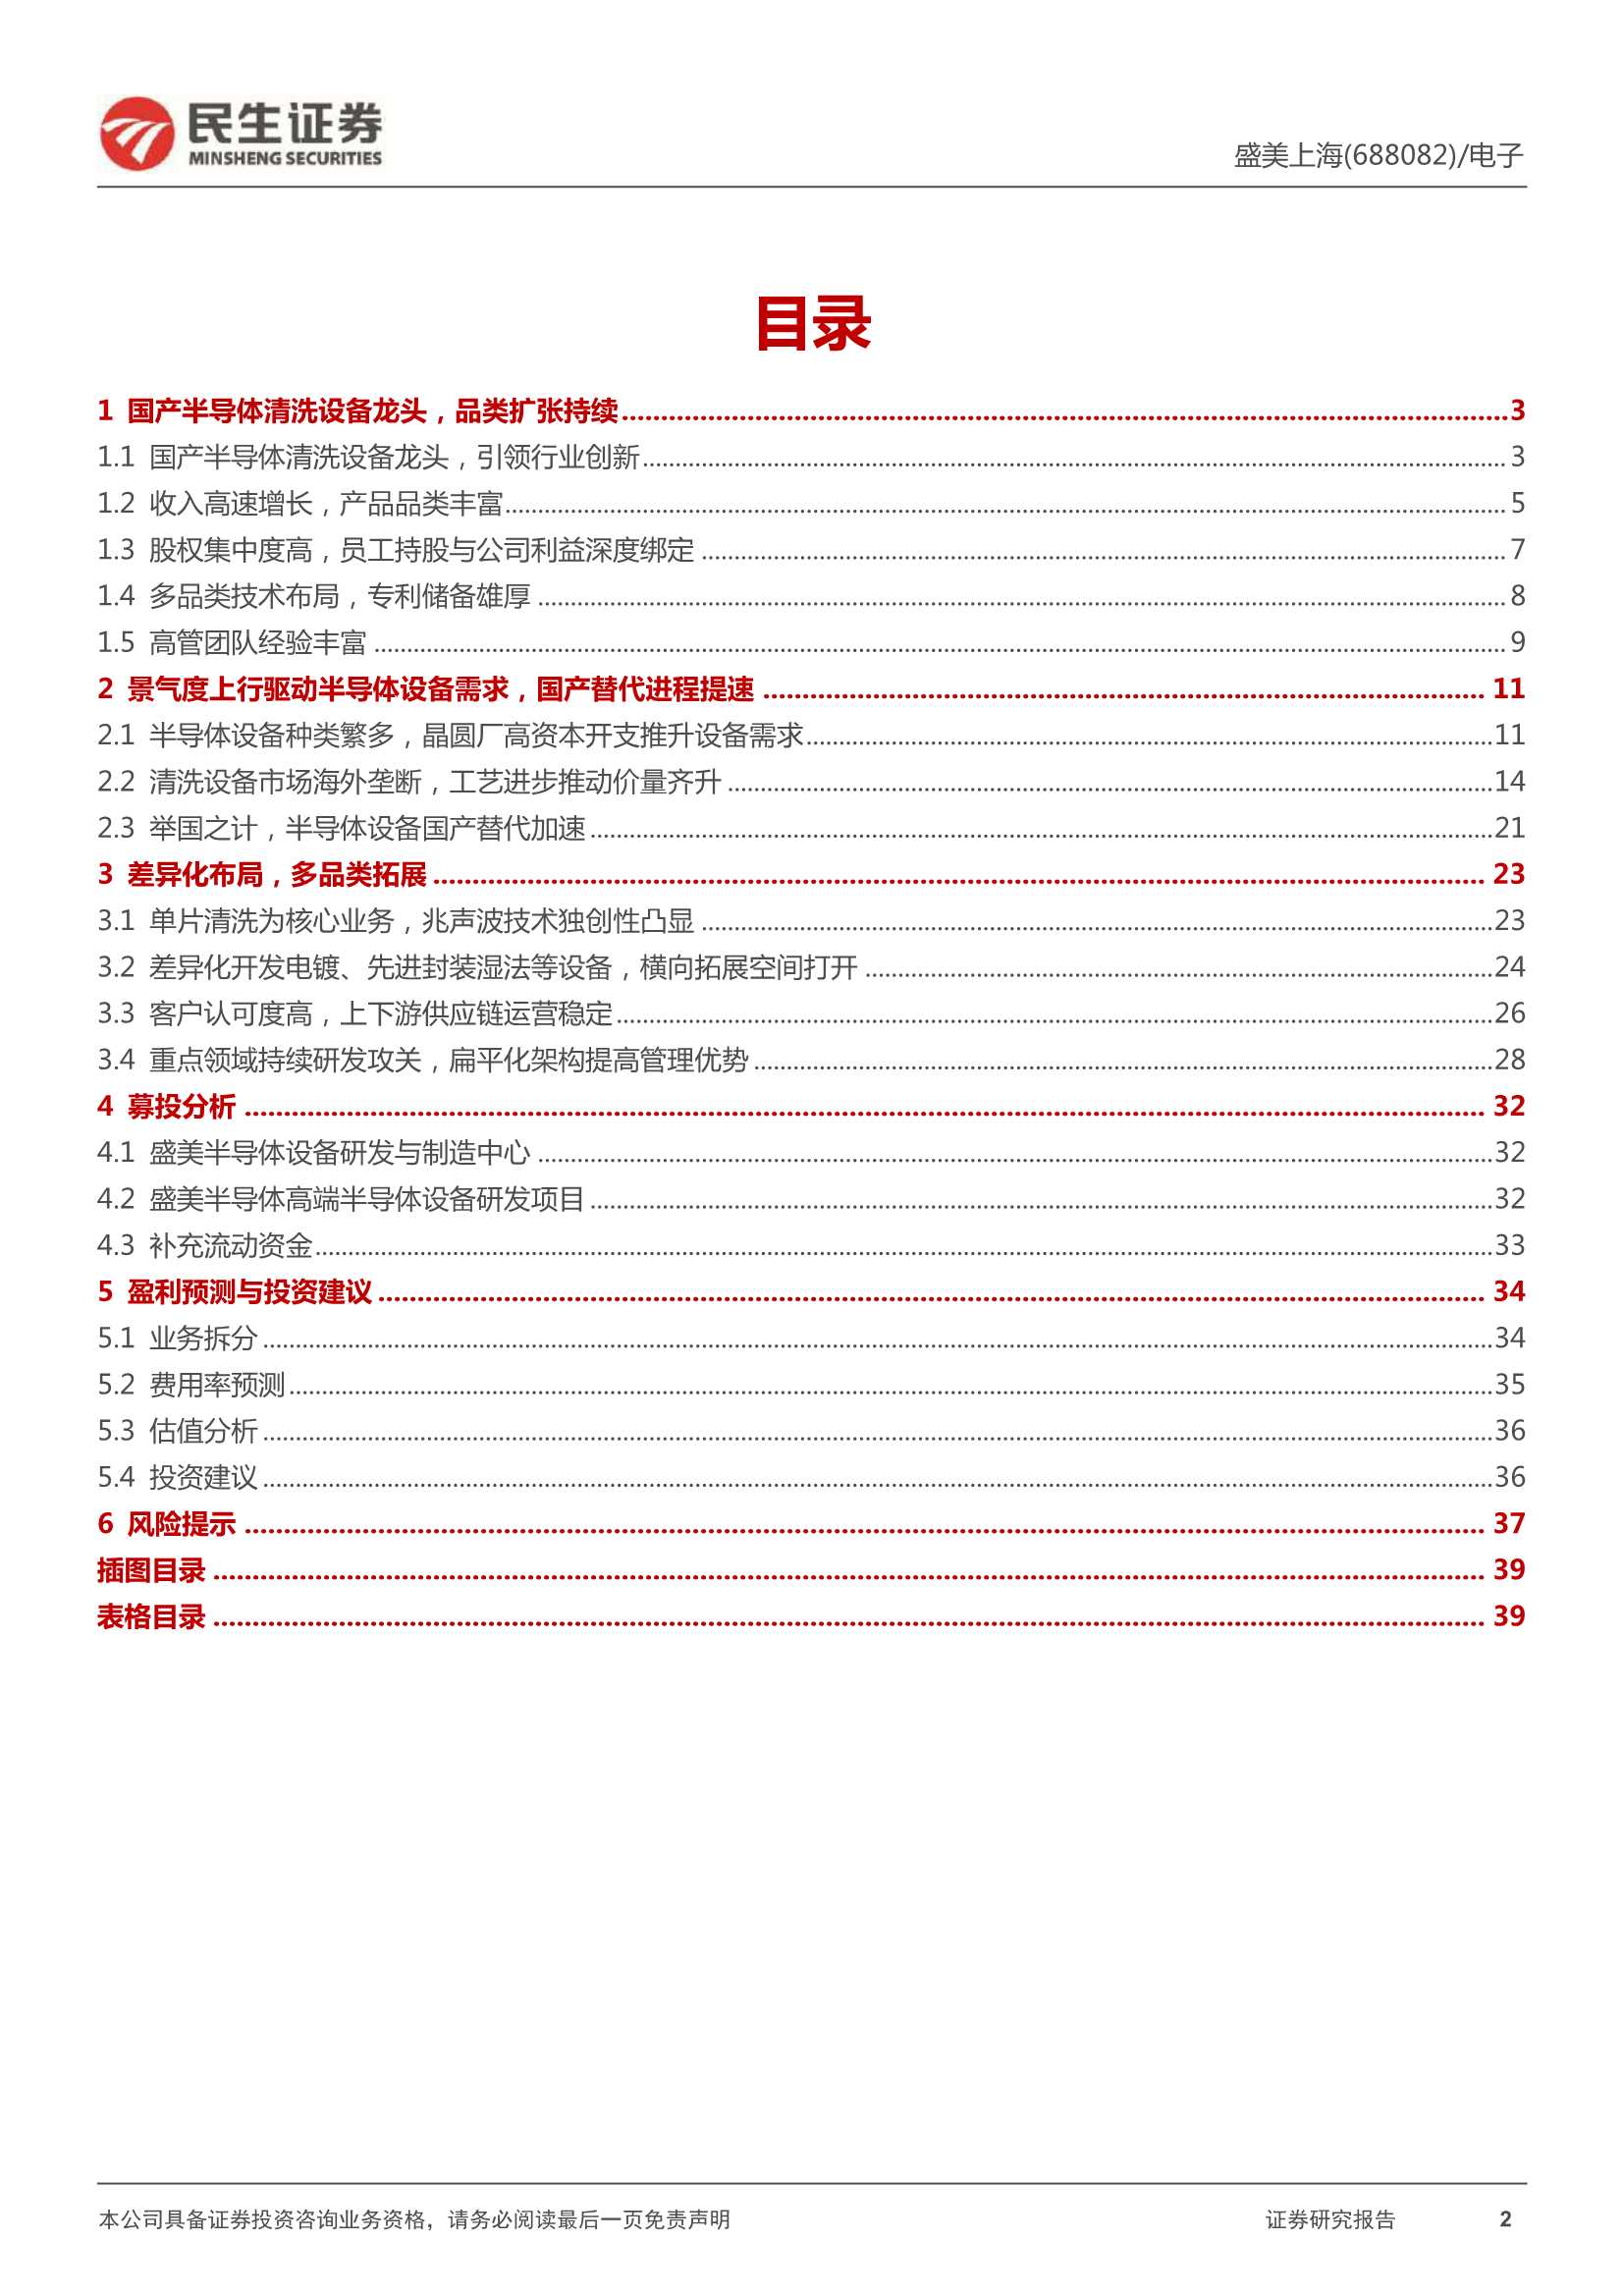 民生证券-盛美上海-688082-深度报告：湿法龙头再出发，半导体设备平台冉冉升起-20220113-41页